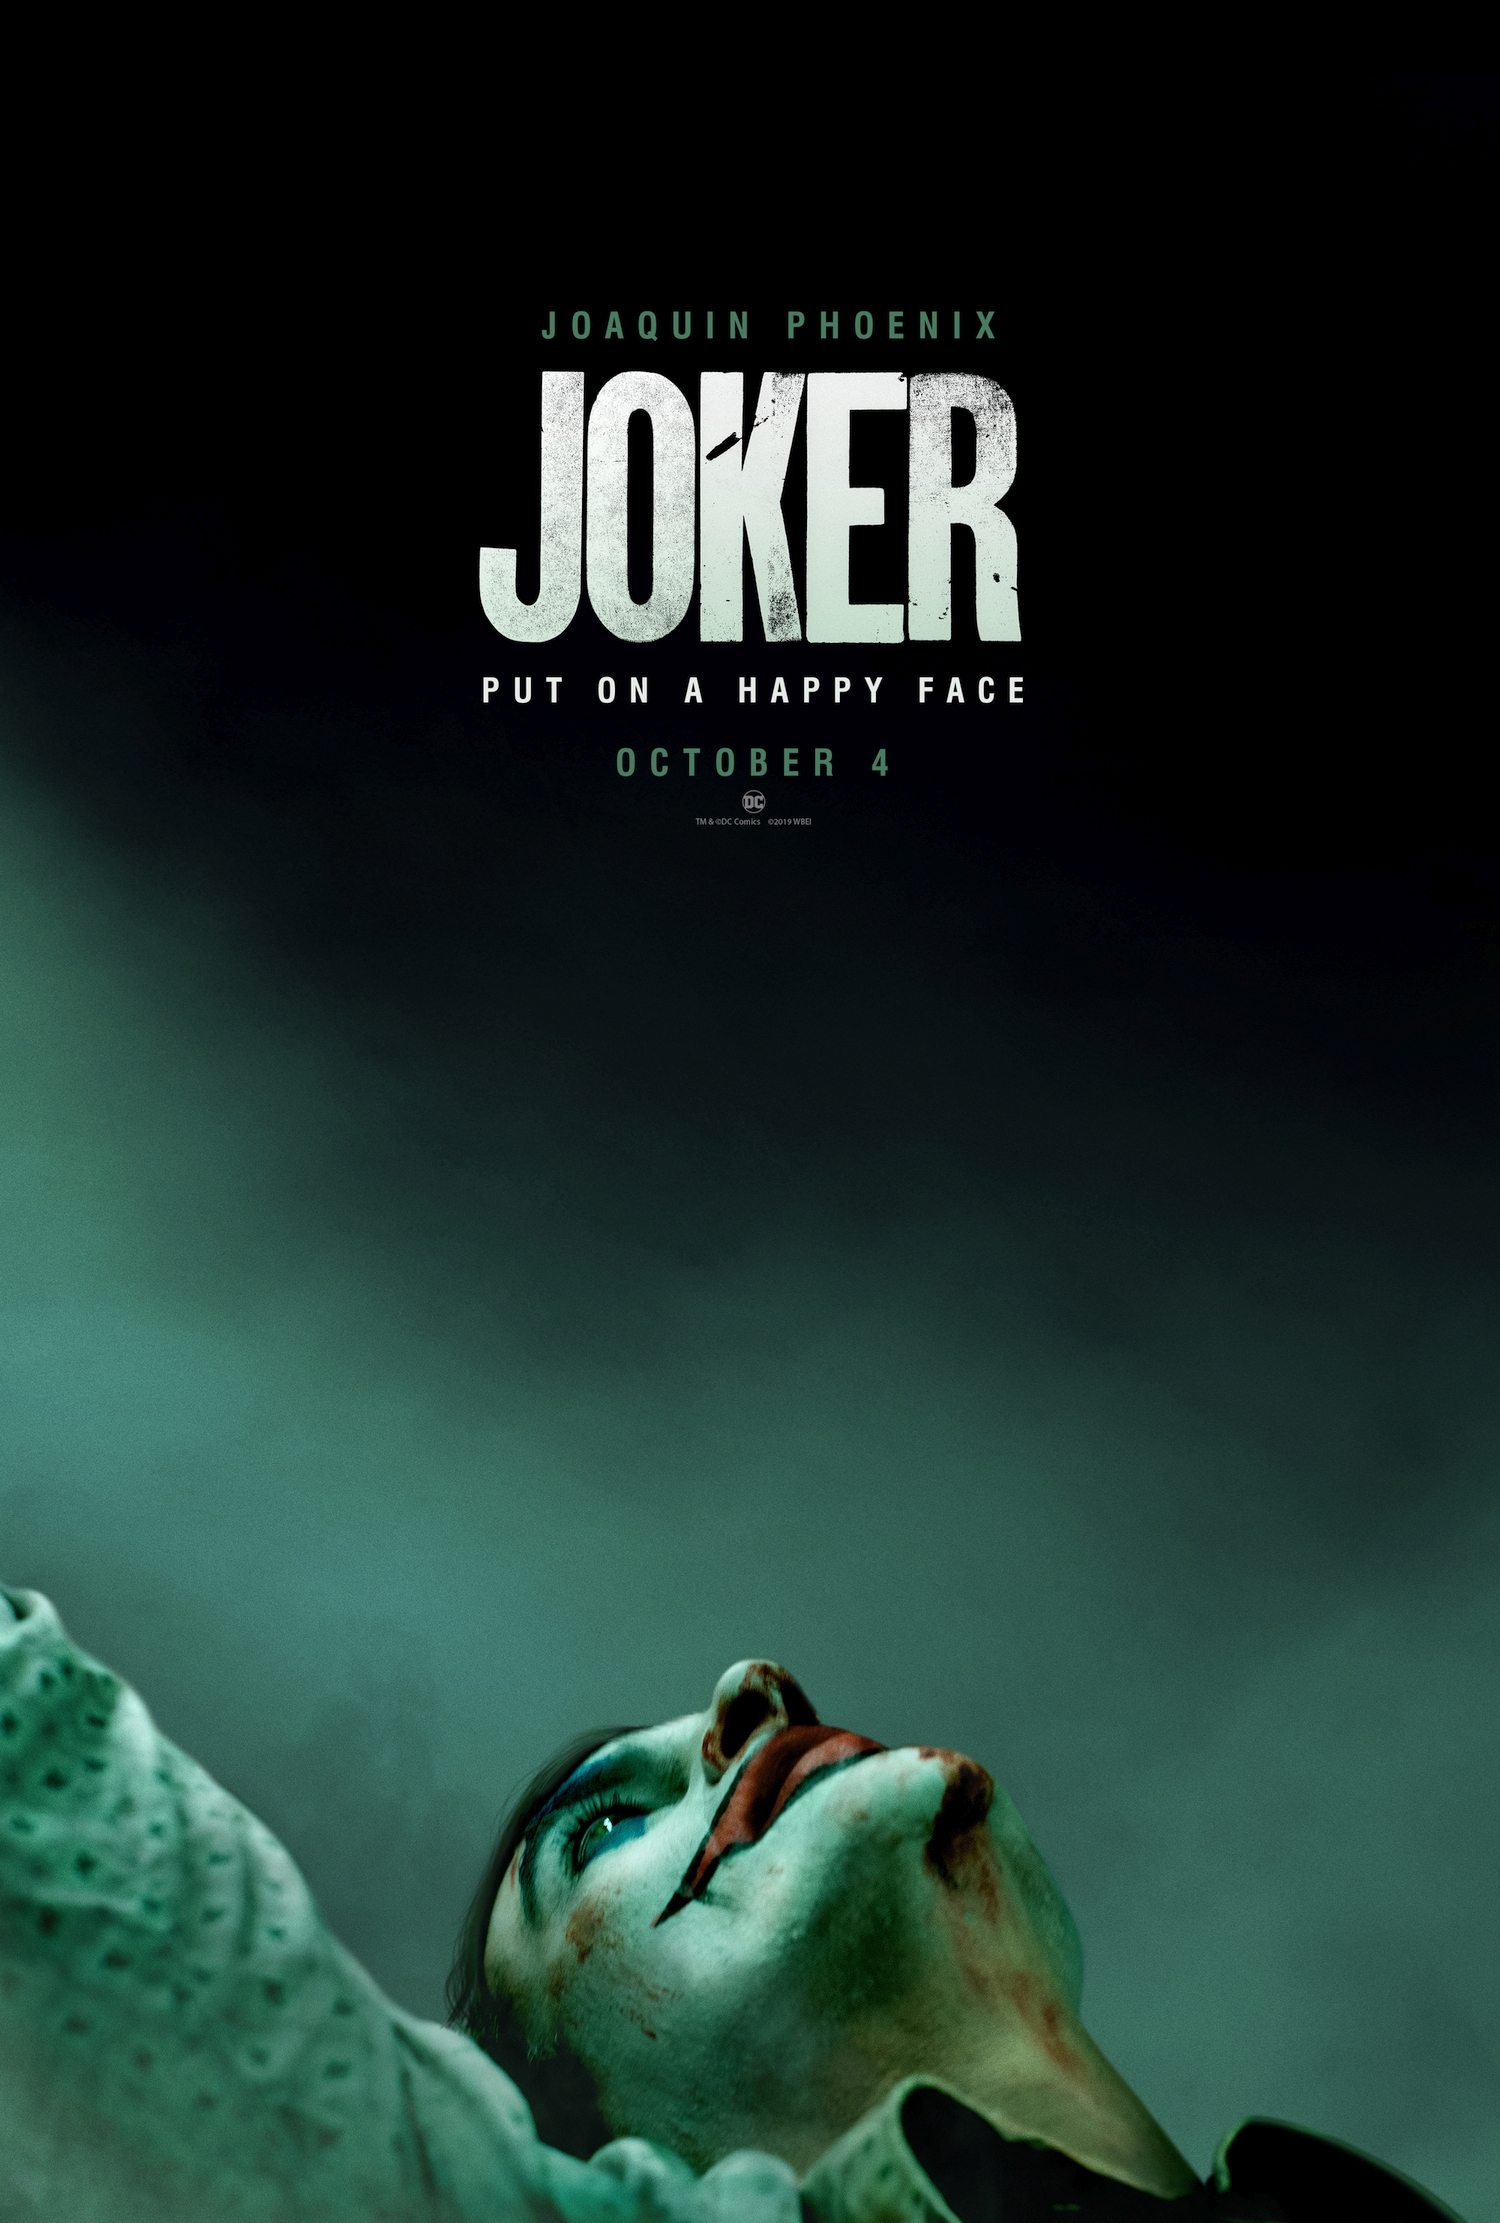 Joker 2019 Movie Joker Joaquin Phoenix Men Makeup Movie Poster DC Comics 1500x2223